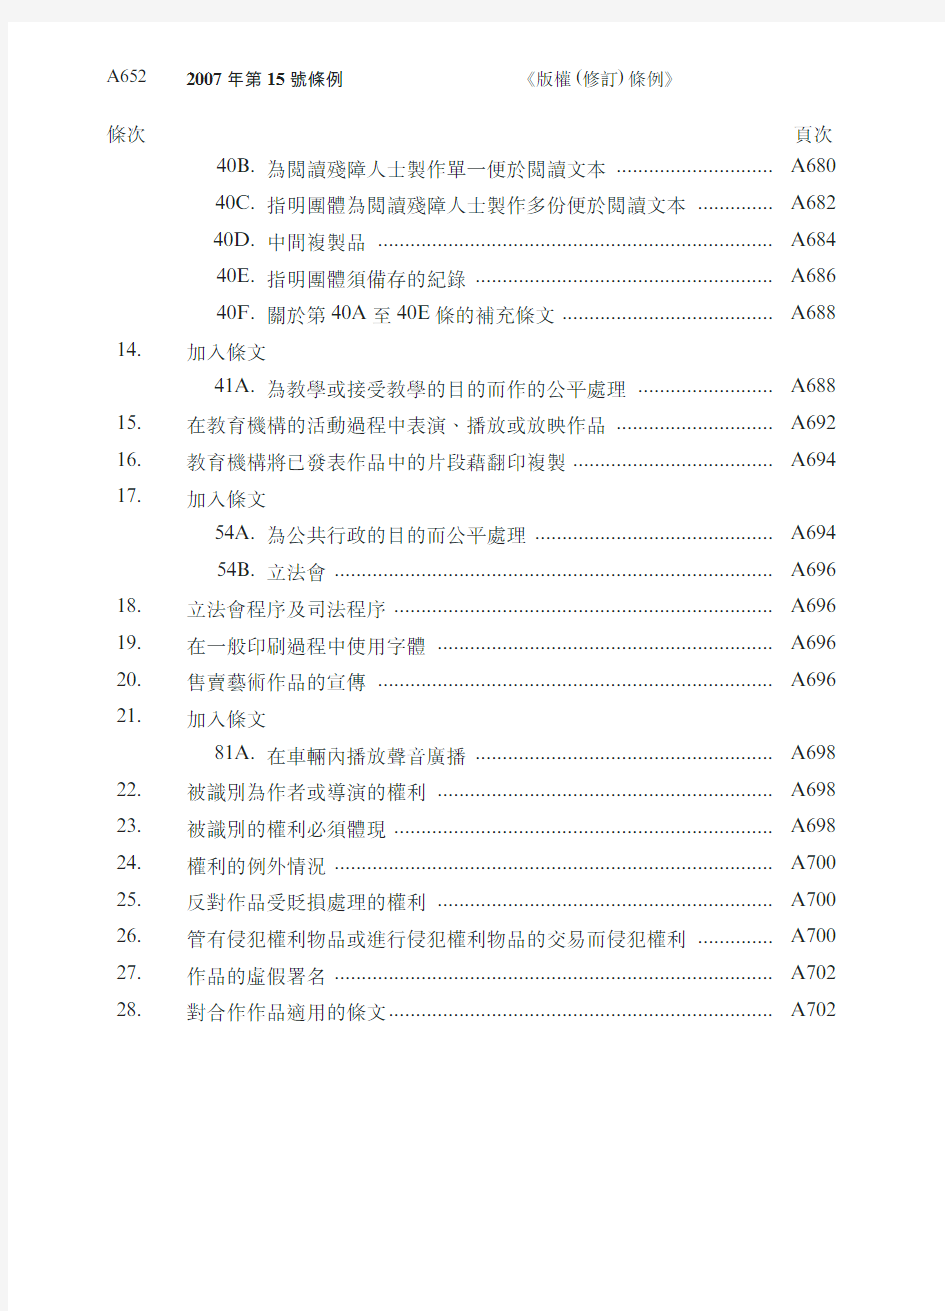 香港 2007年版权(修订)条例